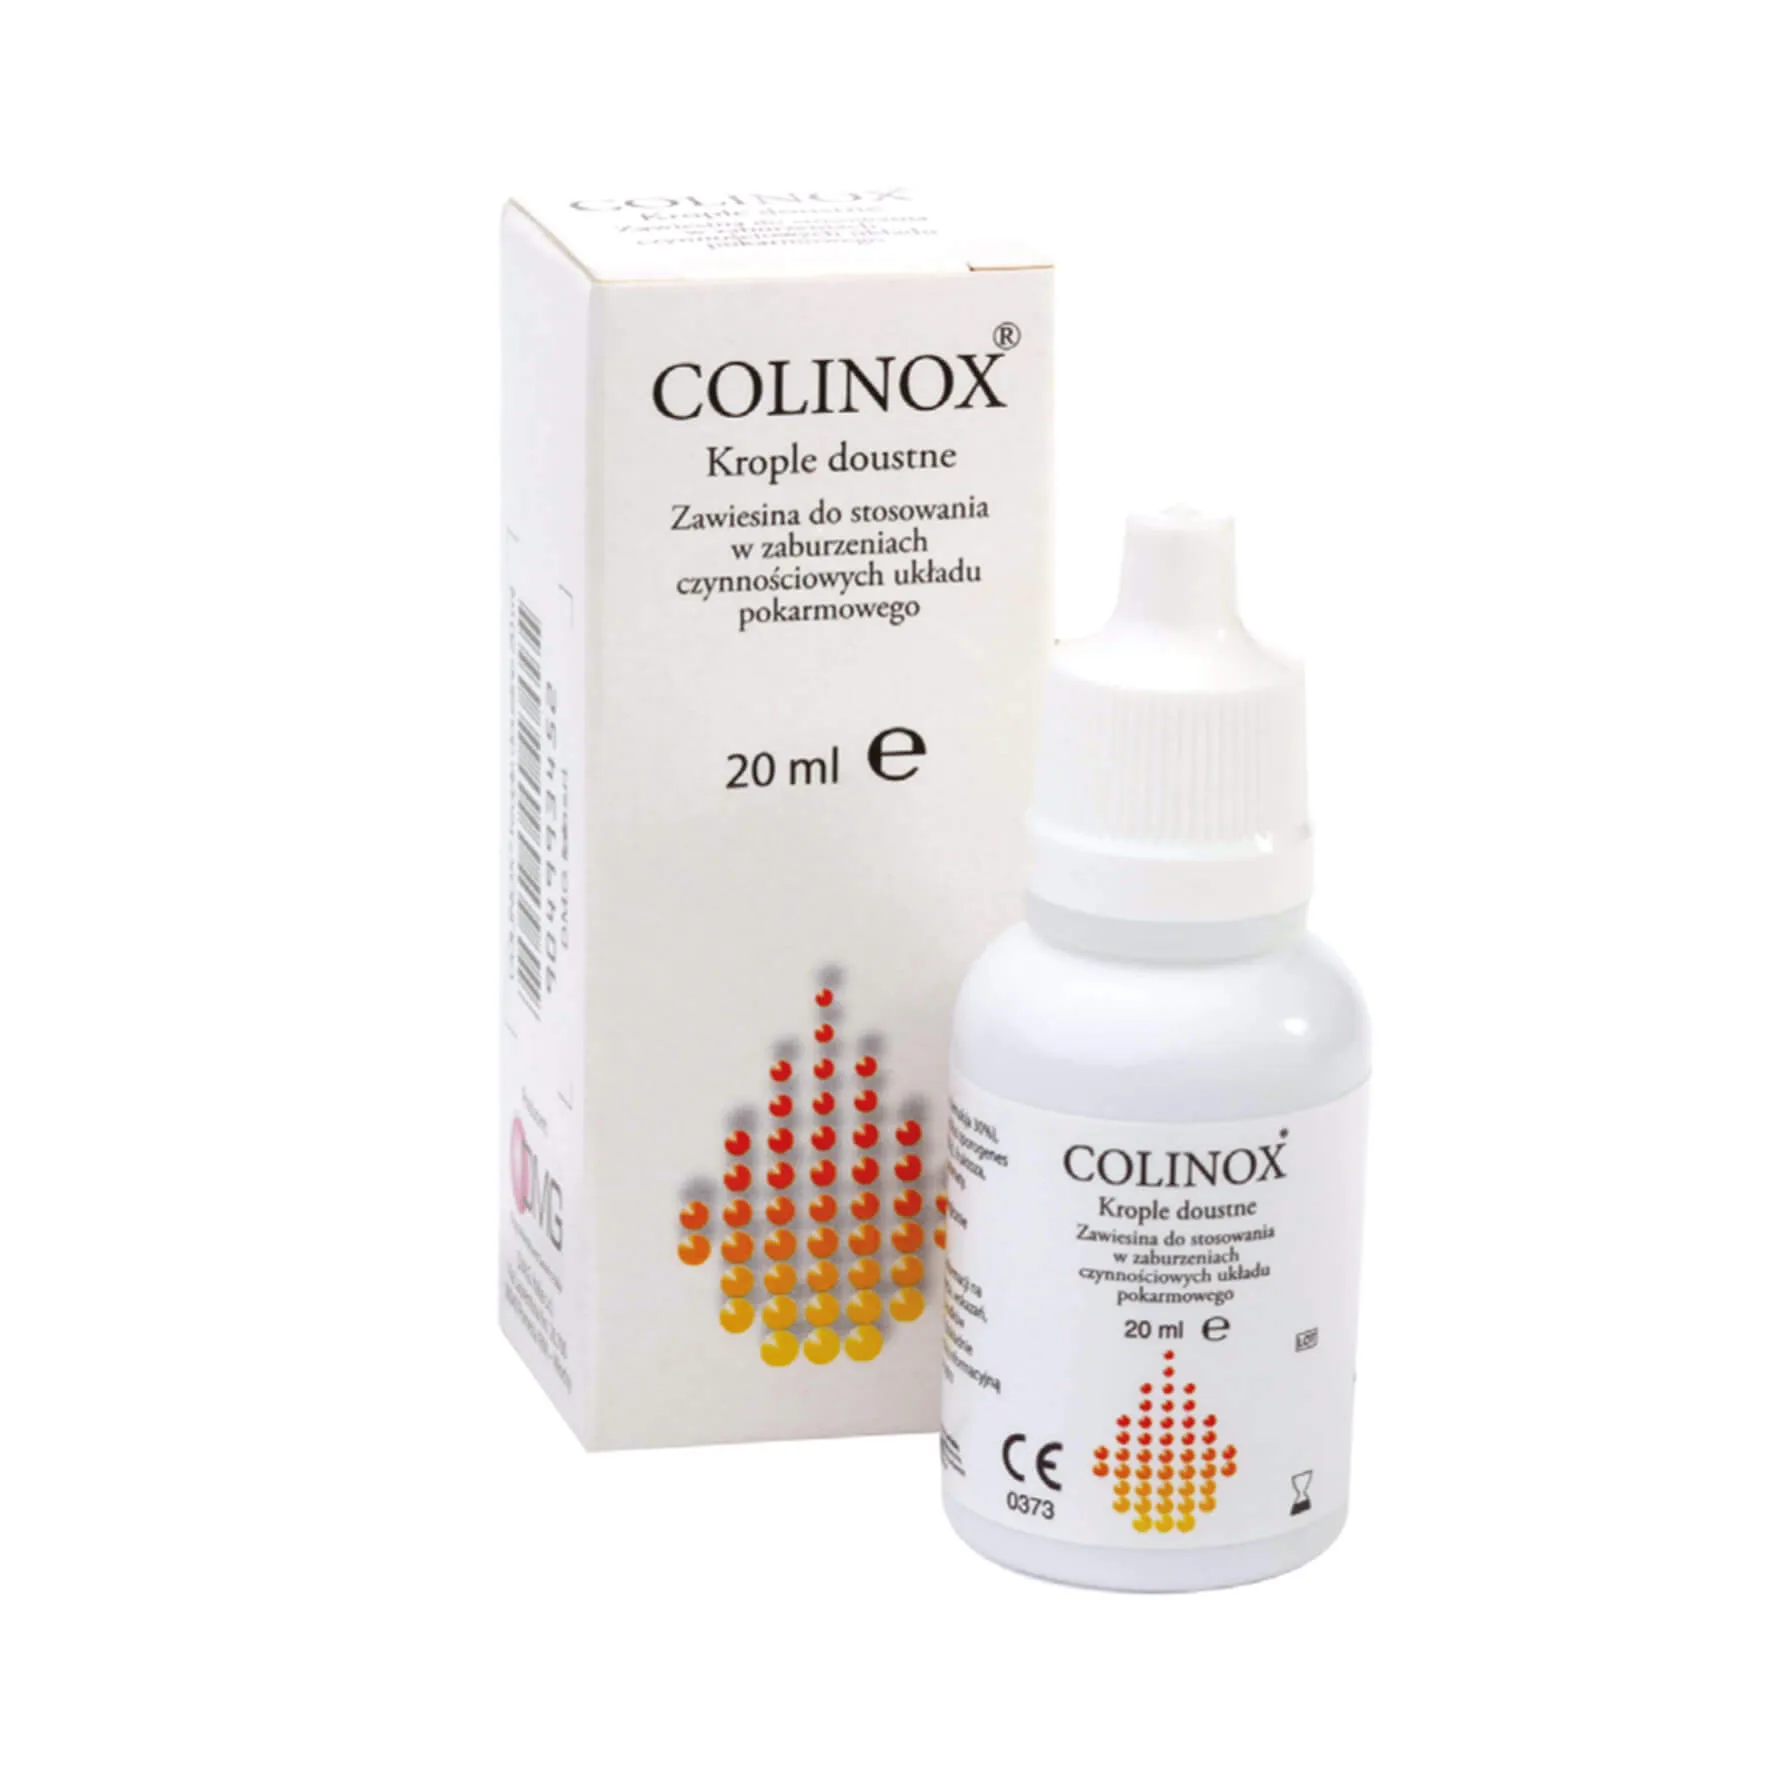 Colinox, krople doustne, 20 ml